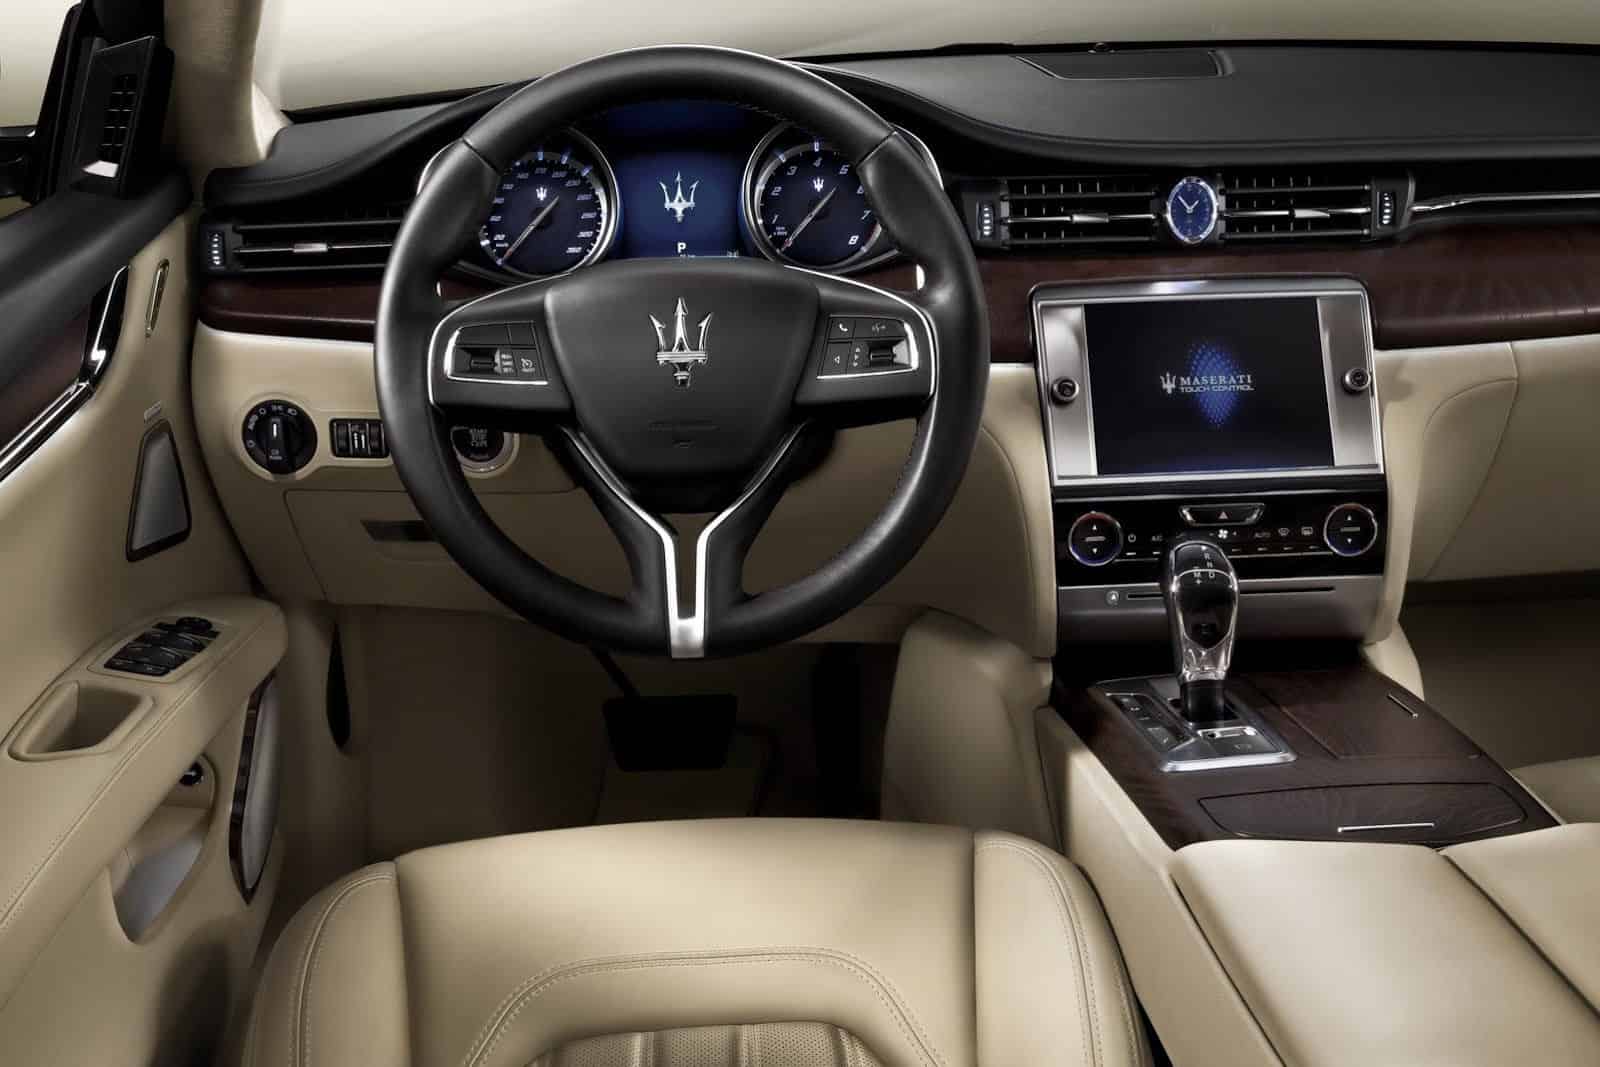 2014 Maserati Quattroporte dashboard